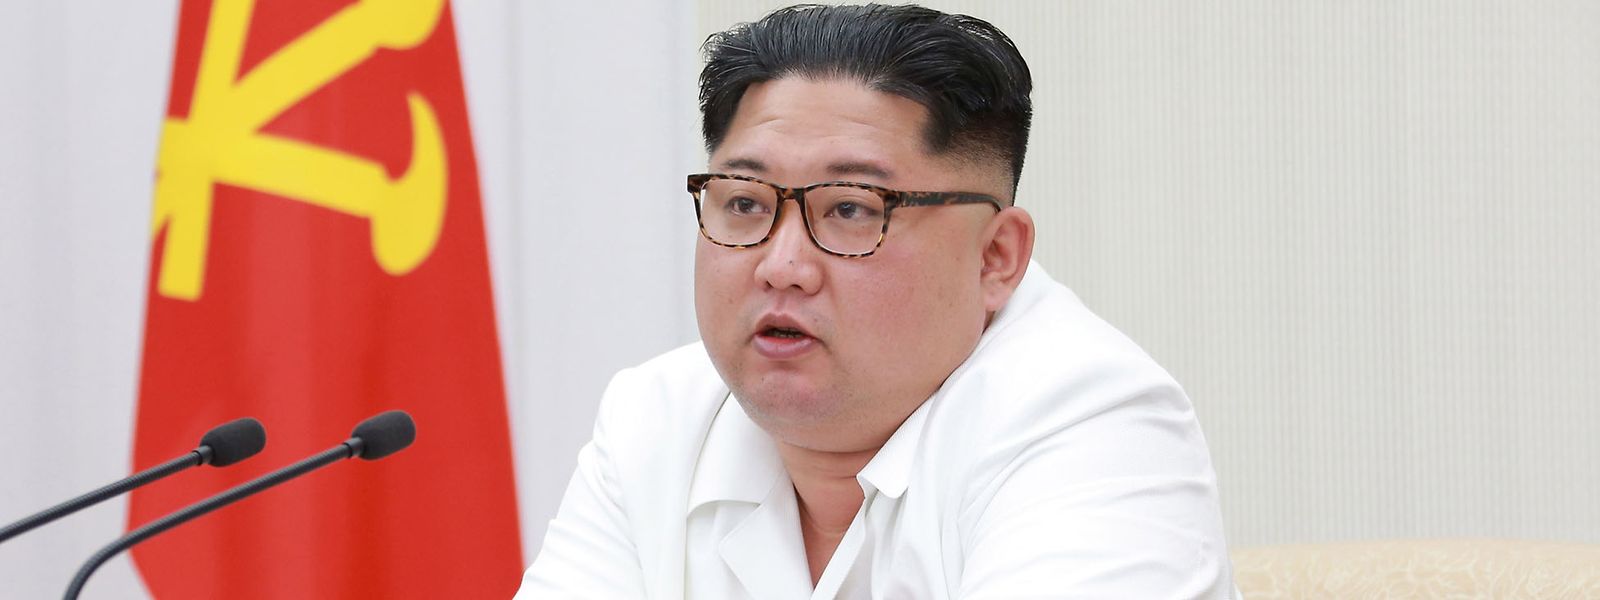 Trump könnte eine Einigung mit Kim Jong Un aus strategisch-politischer Sicht gut gebrauchen.